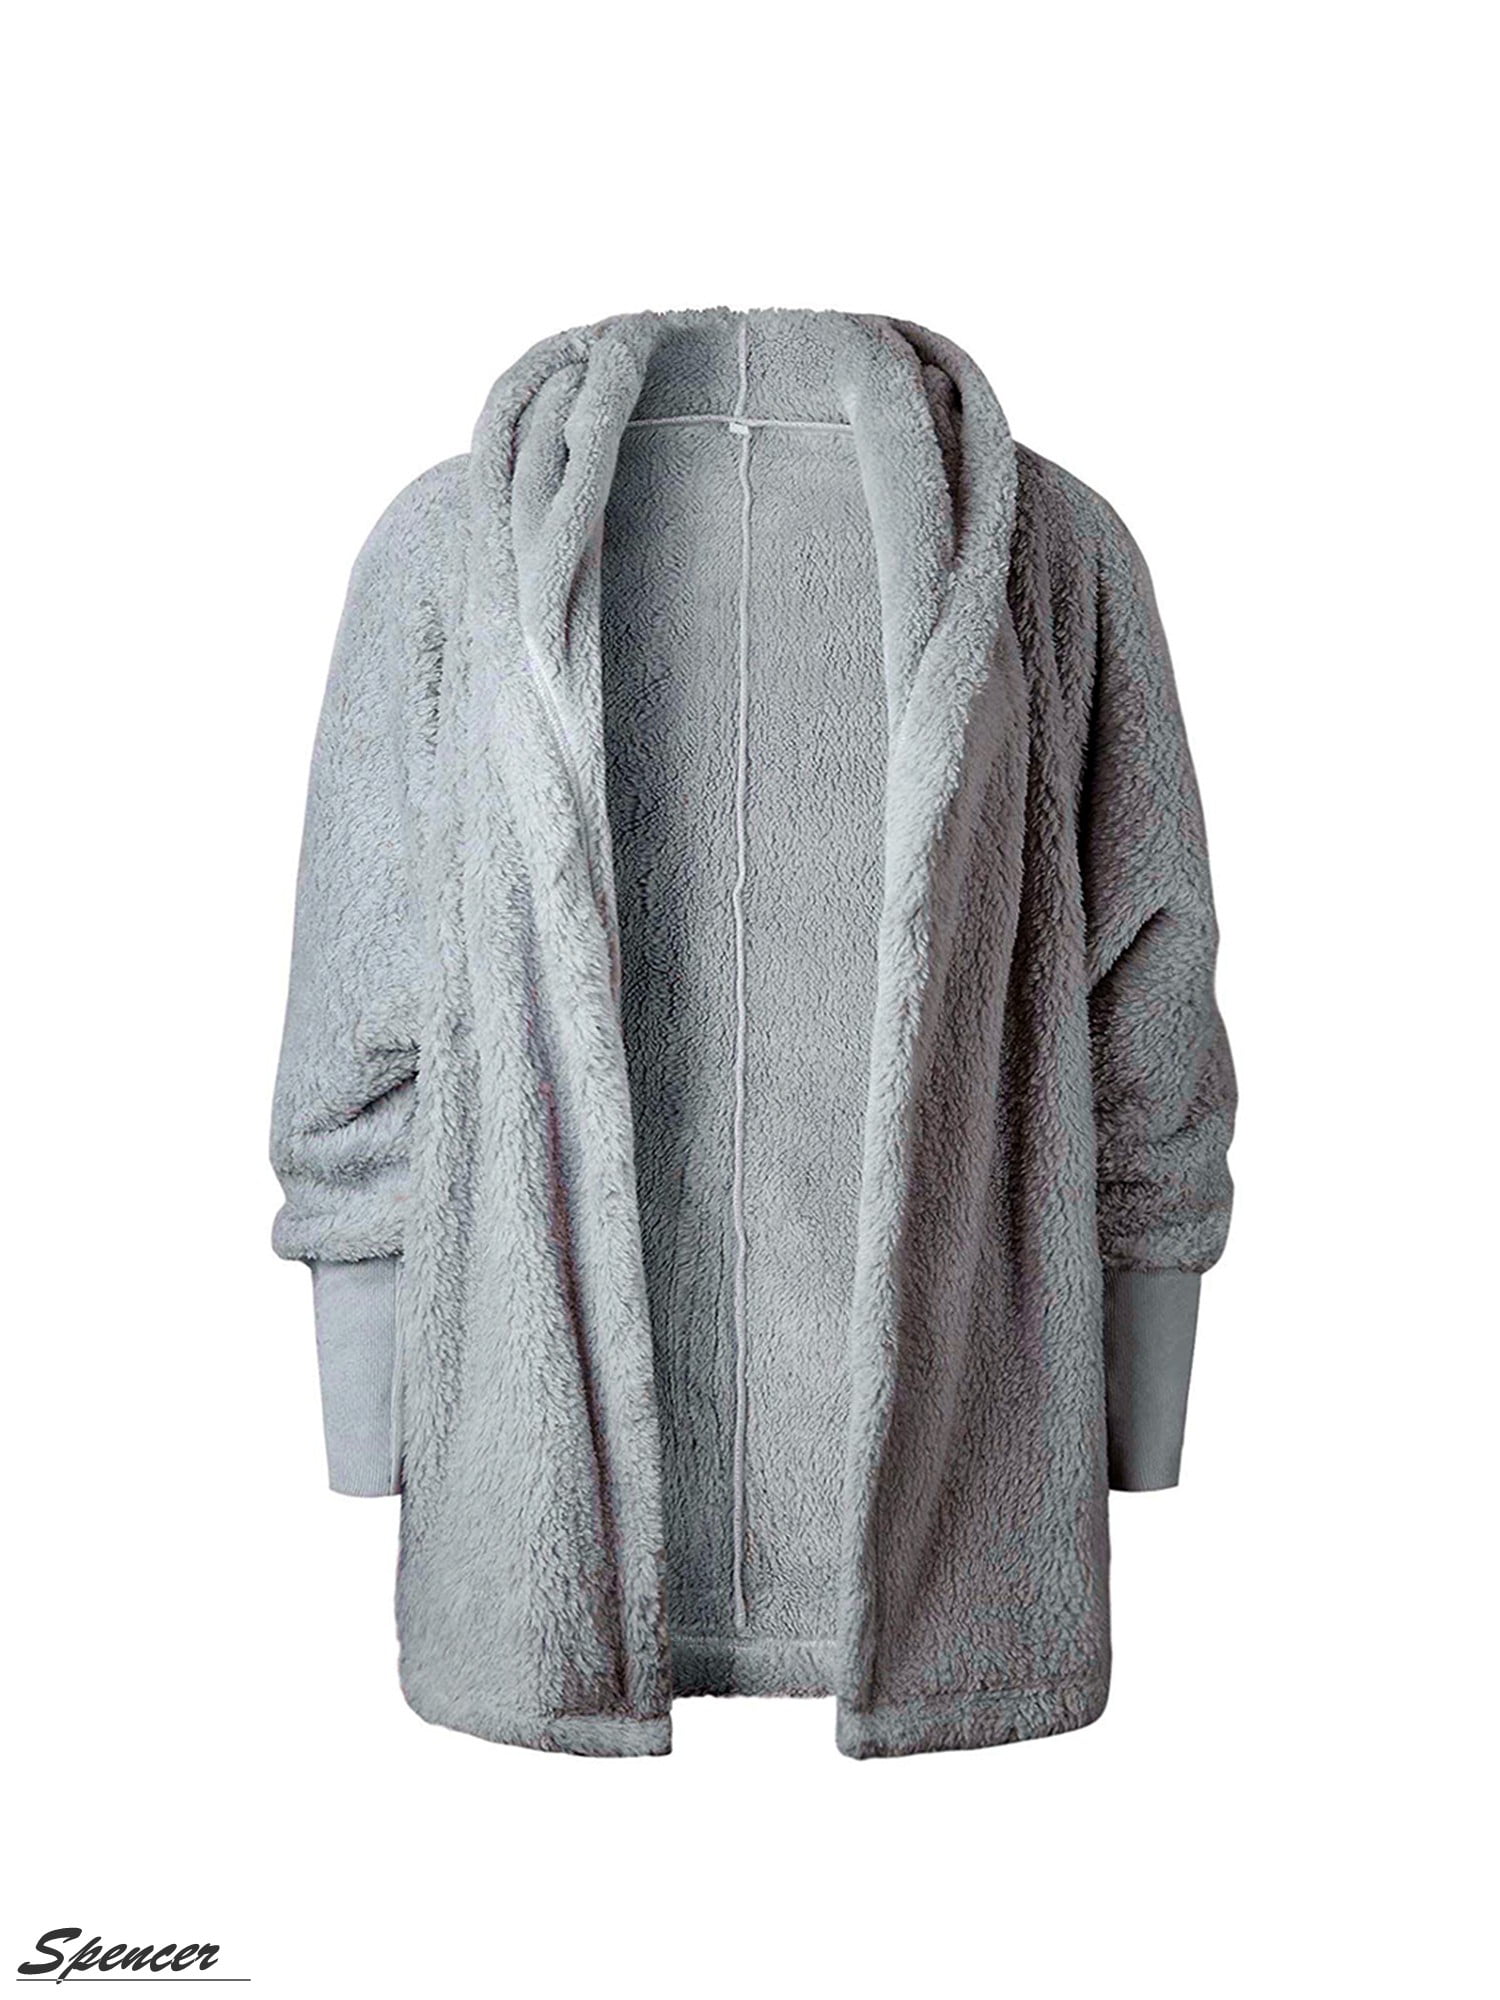 S.Charma Women Winter Fleece Hooded Coat Open Front Full Zip Up Sherpa Outwear Jacket with Pockets